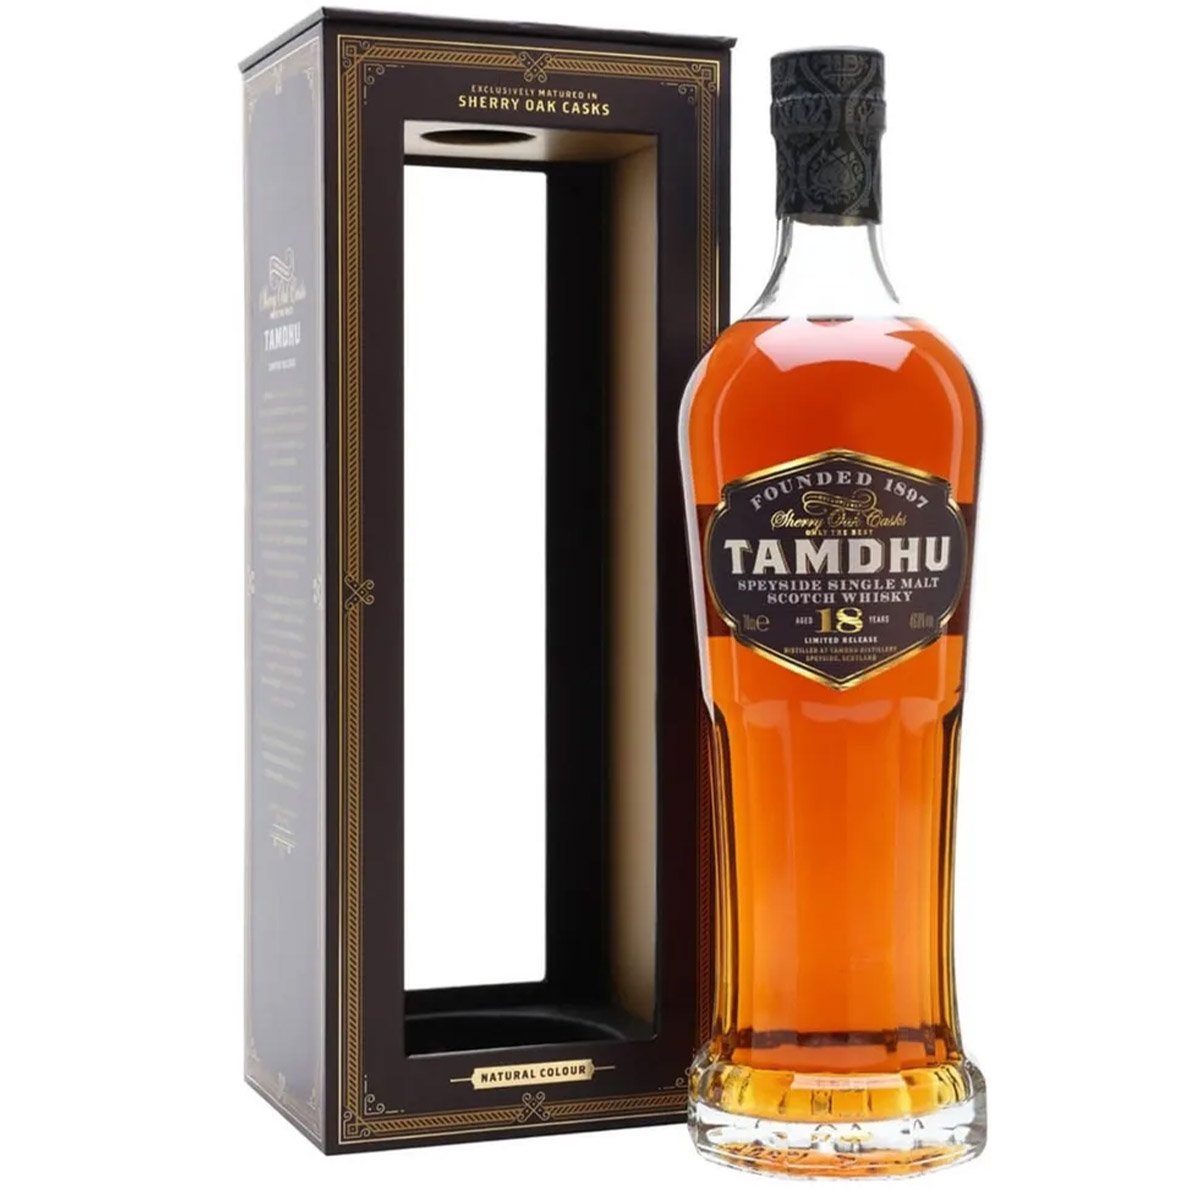 Віскі Tamdhu 18 yo Single Malt Scotch Whisky 46.8% 0.7 л у подарунковій упаковці - фото 1